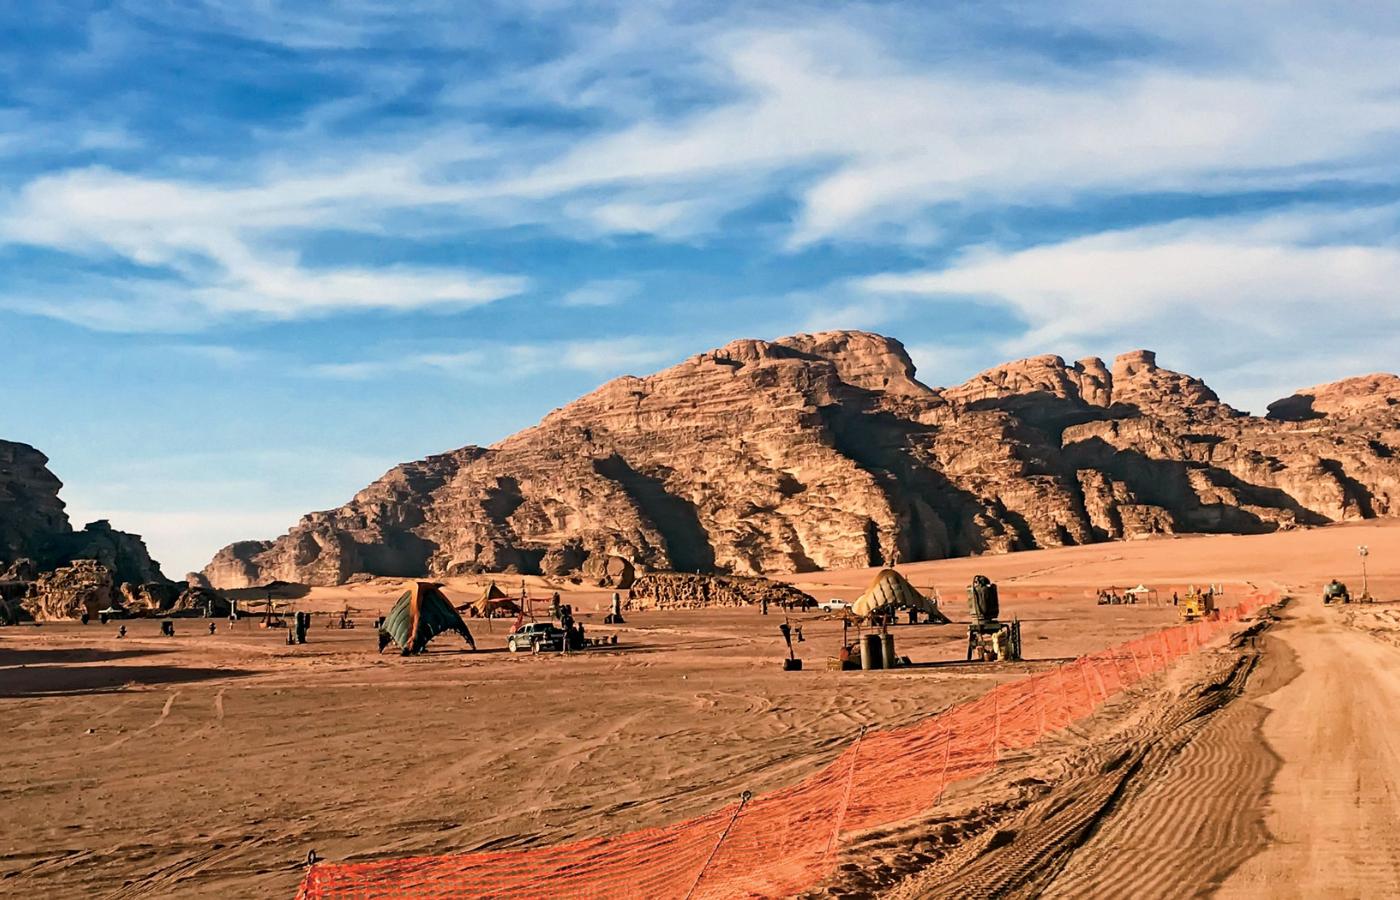 Plan filmowy IX części „Gwiezdnych wojen” na pustyni Wadi Rum.